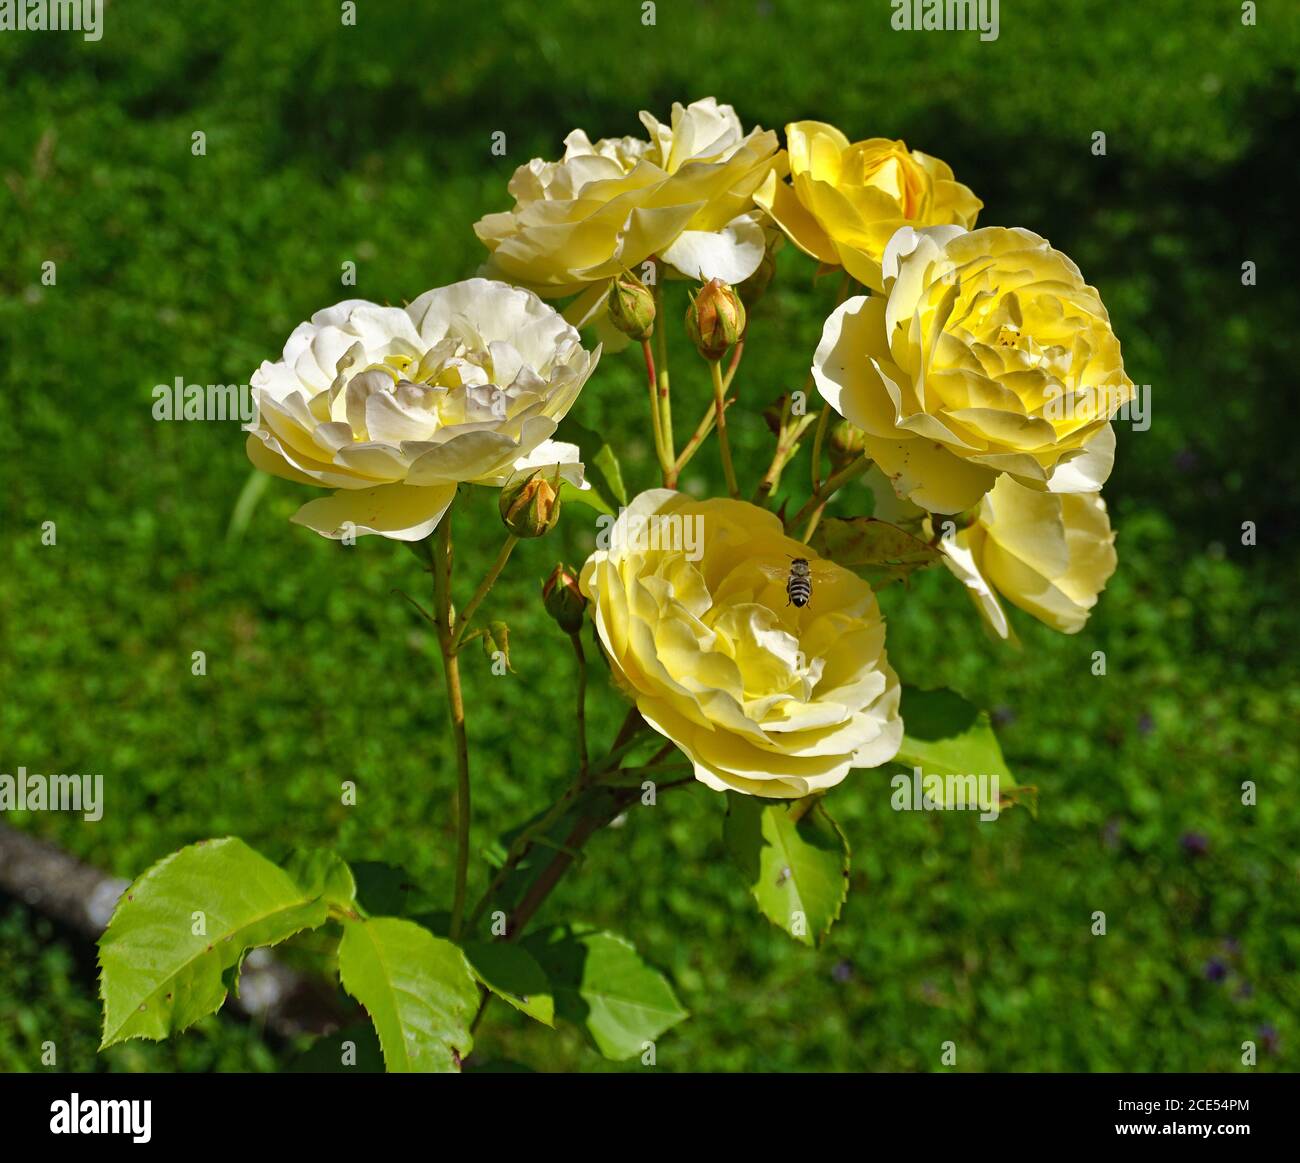 yellow rose Stock Photo